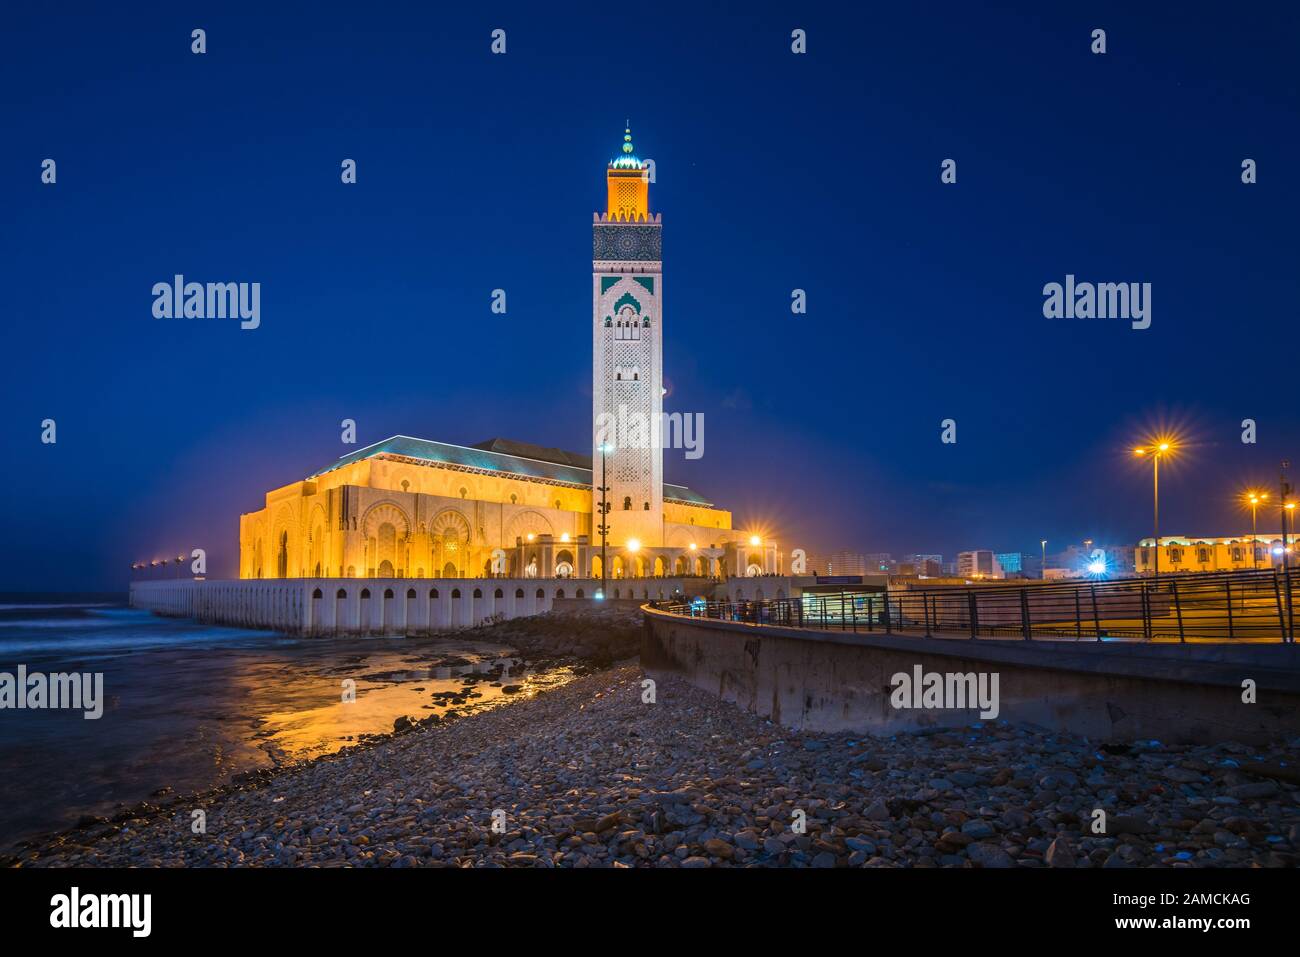 La Moschea di Hassan II è una moschea di Casablanca, Marocco. È la più grande moschea del Marocco con il minareto più alto del mondo. Foto Stock